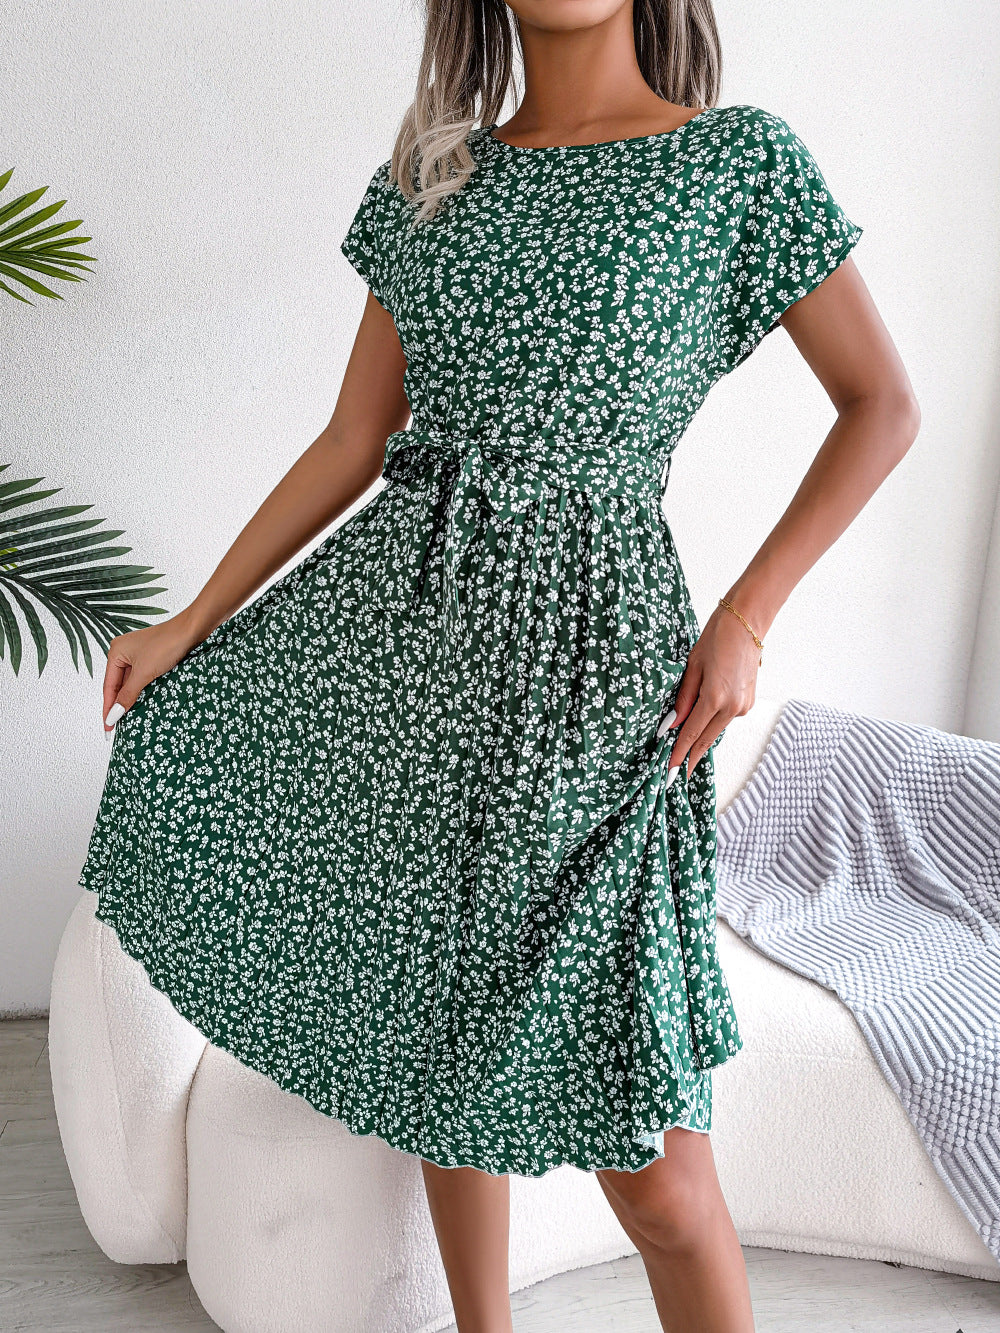 Summer Short Sleeve Floral Print Dress For Women